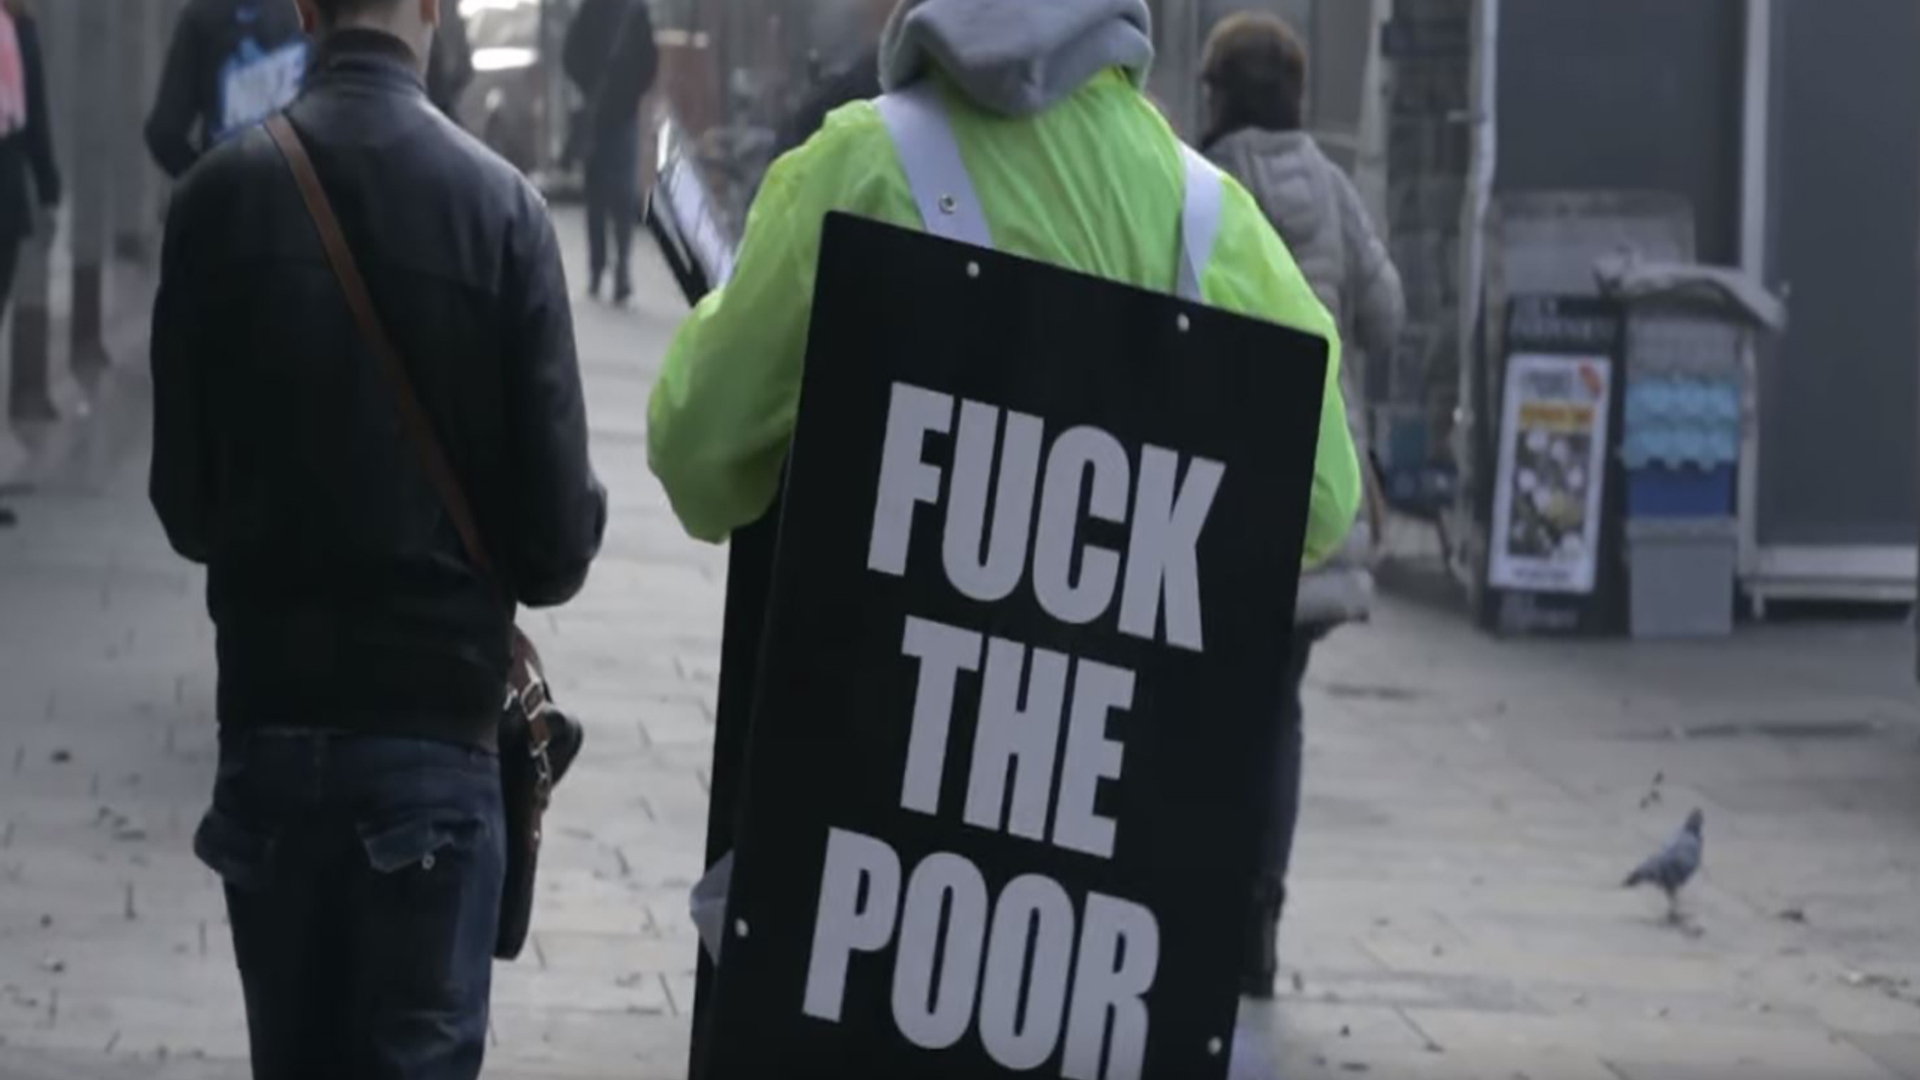 Fuck the poor, reclame